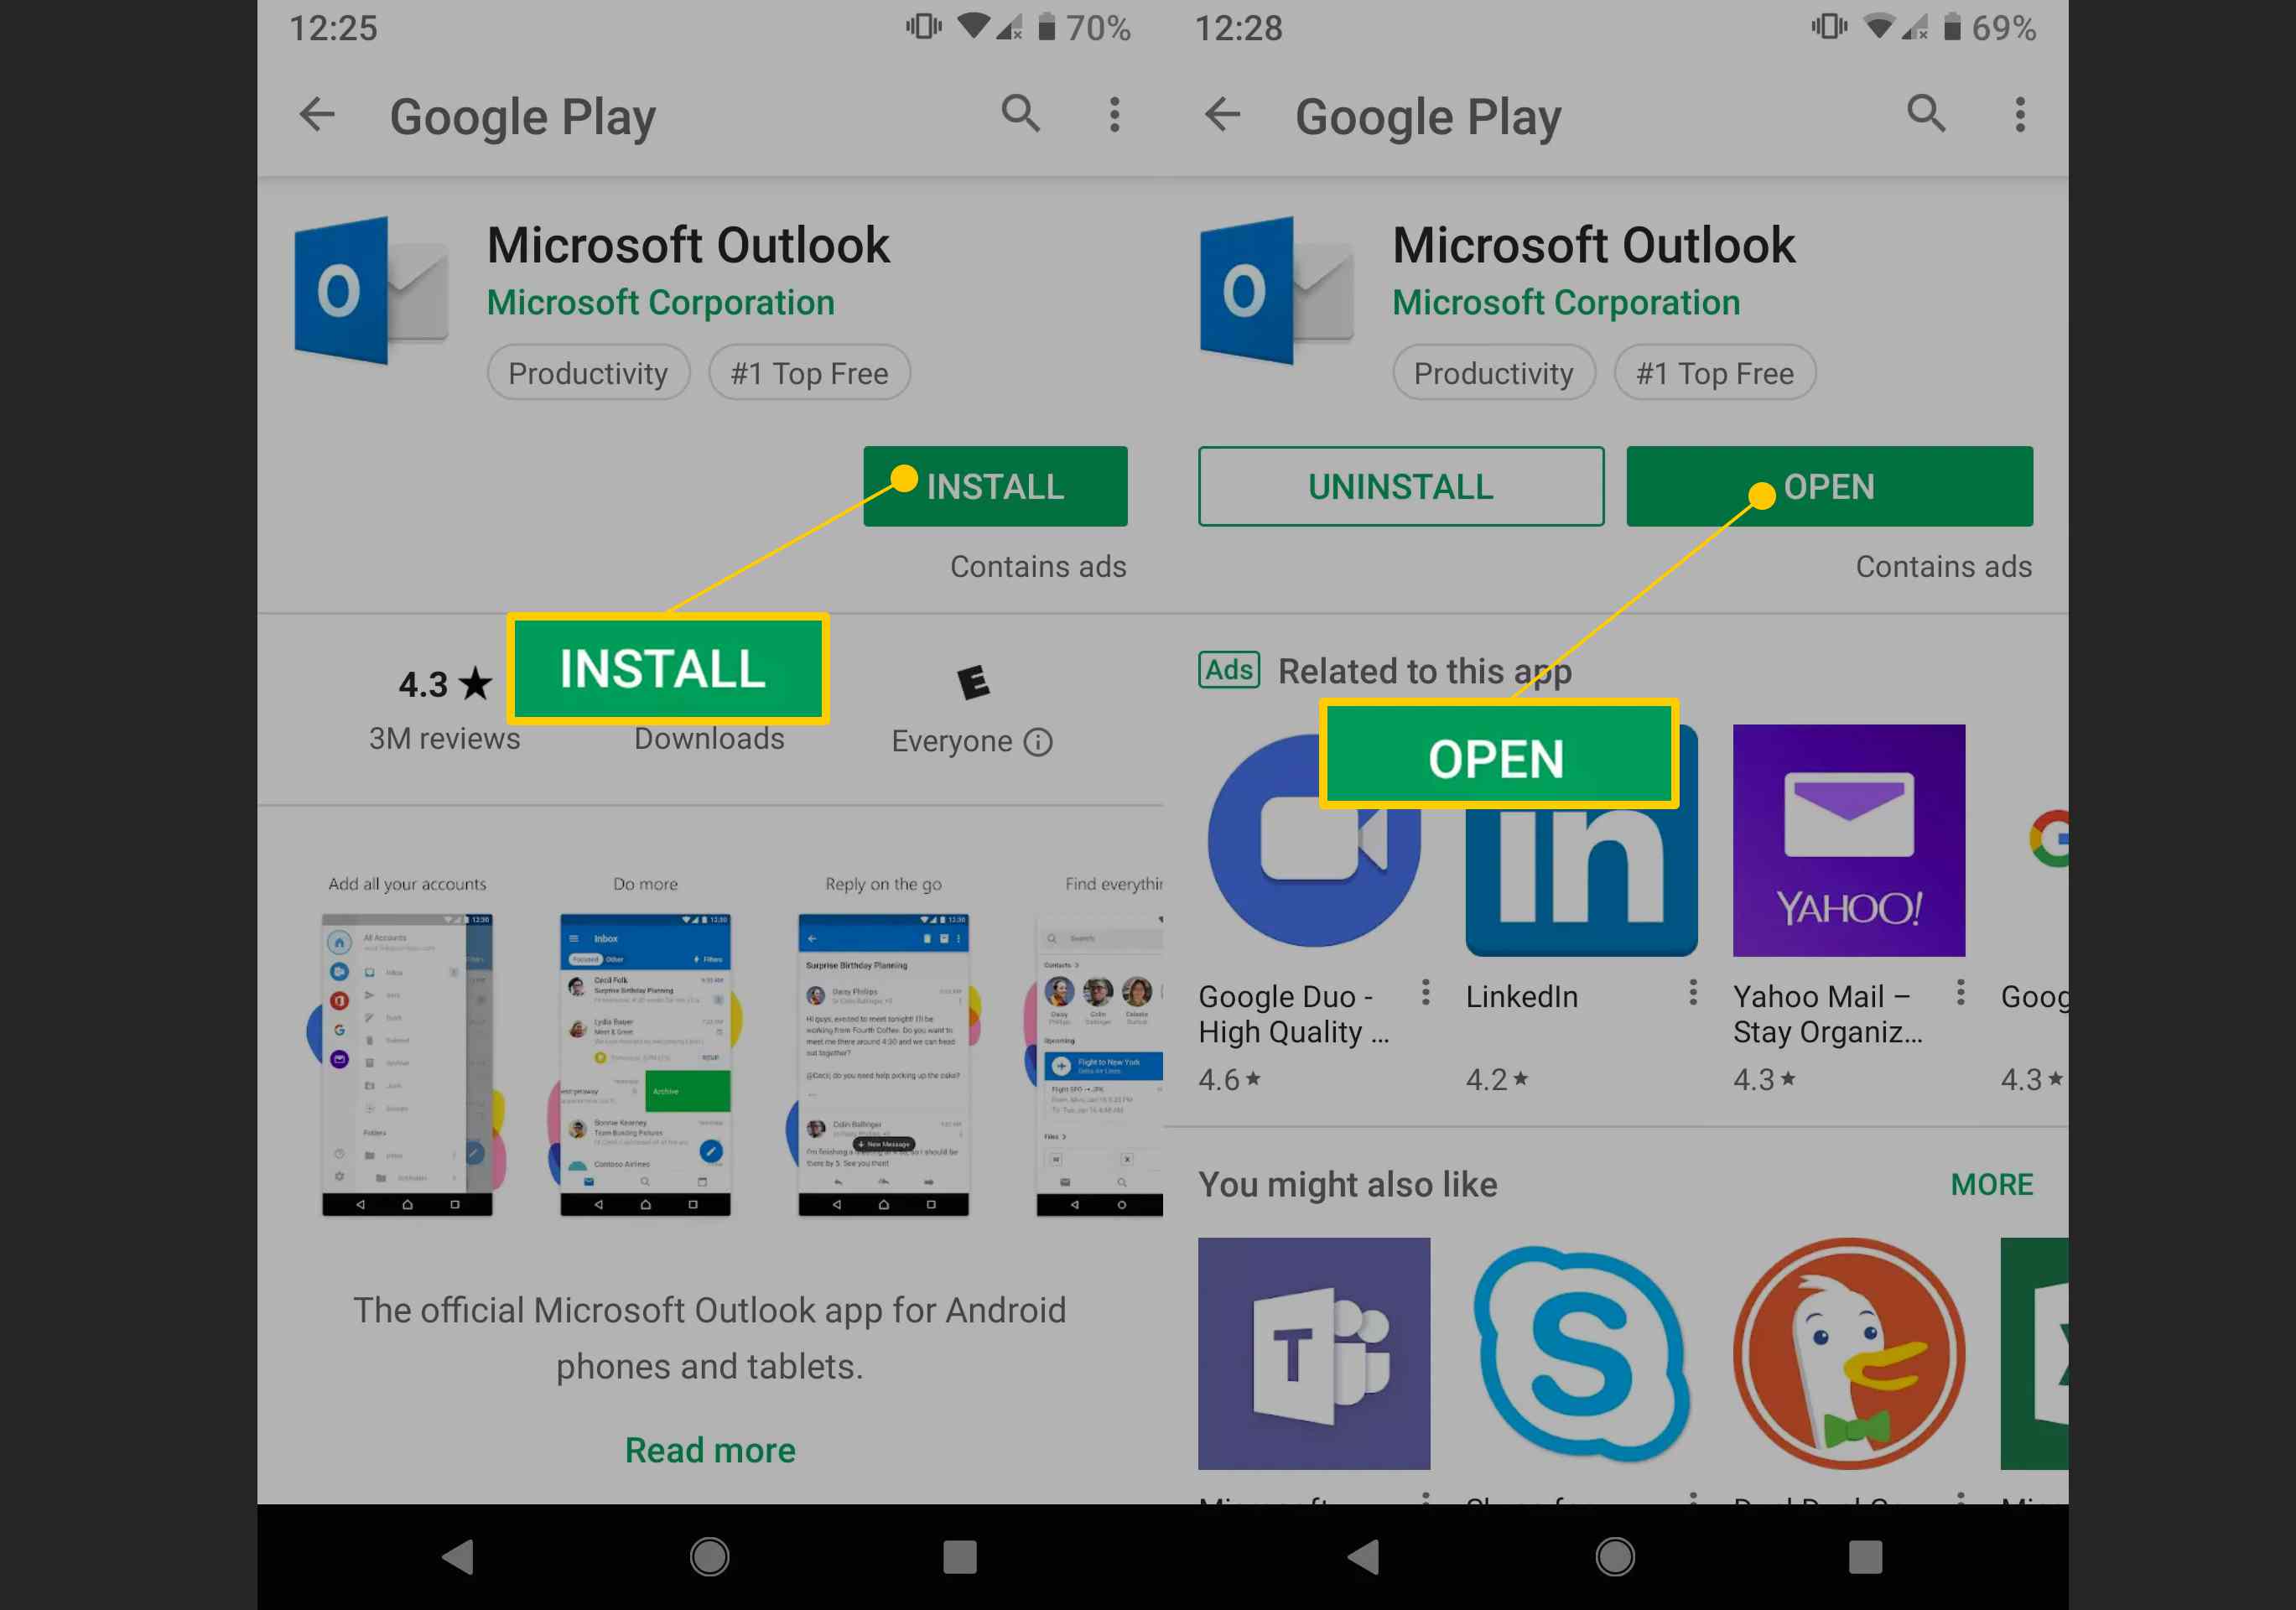 Knoppen Installeren en Openen in Google Play voor Microsoft-apps